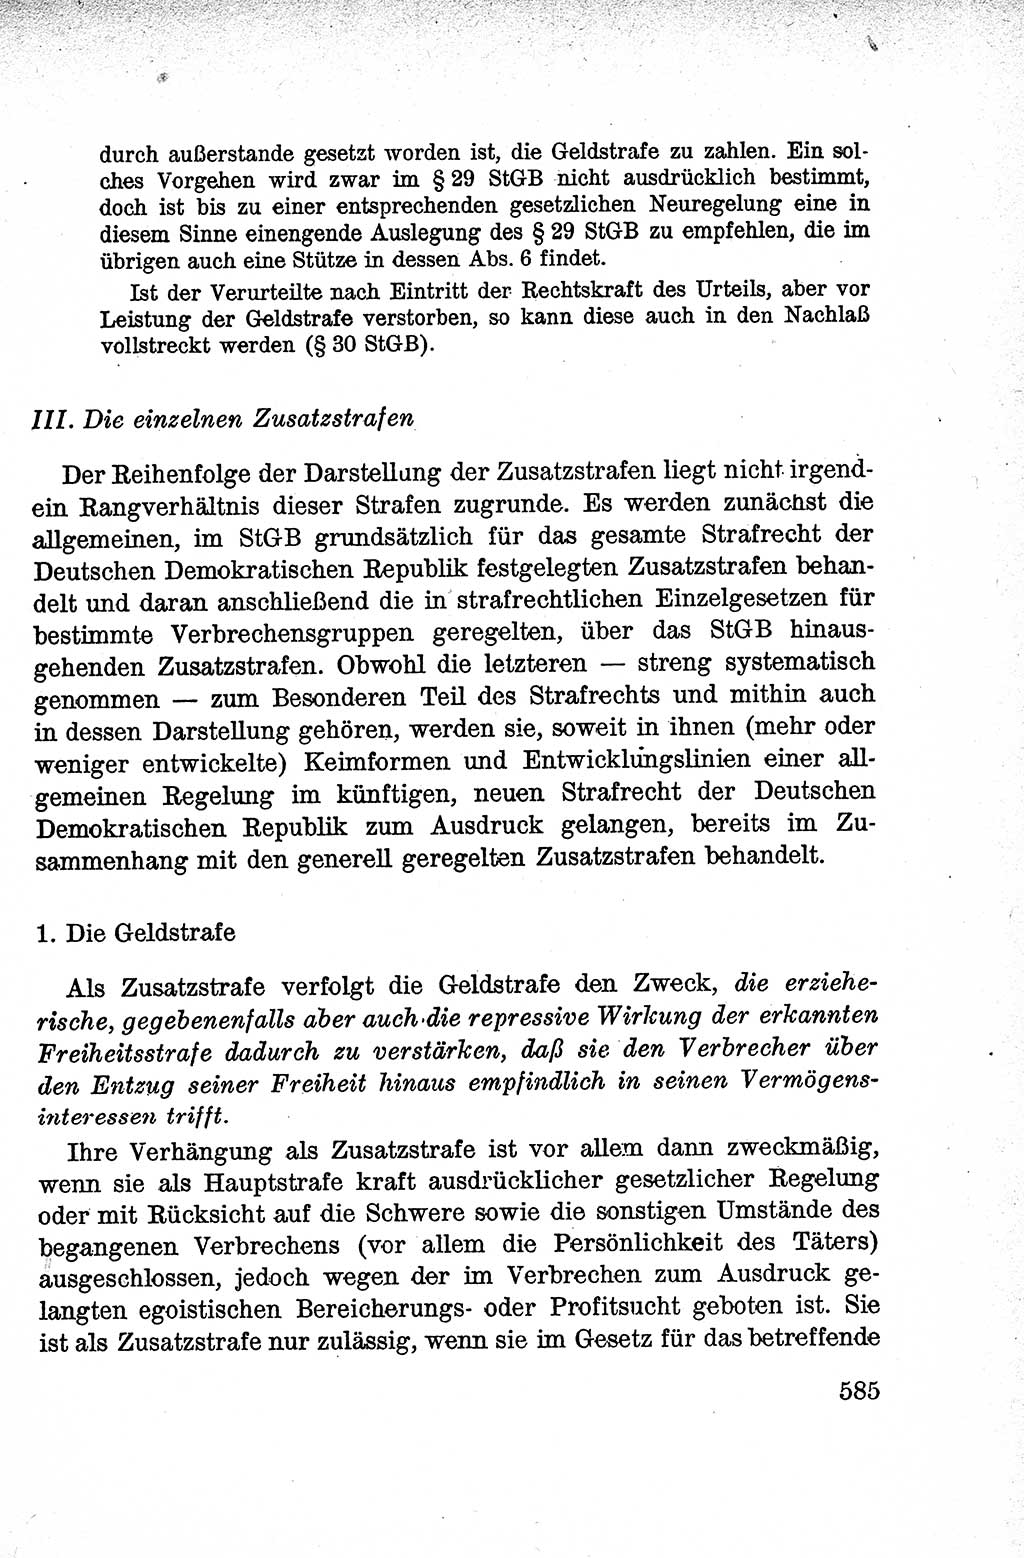 Lehrbuch des Strafrechts der Deutschen Demokratischen Republik (DDR), Allgemeiner Teil 1959, Seite 585 (Lb. Strafr. DDR AT 1959, S. 585)